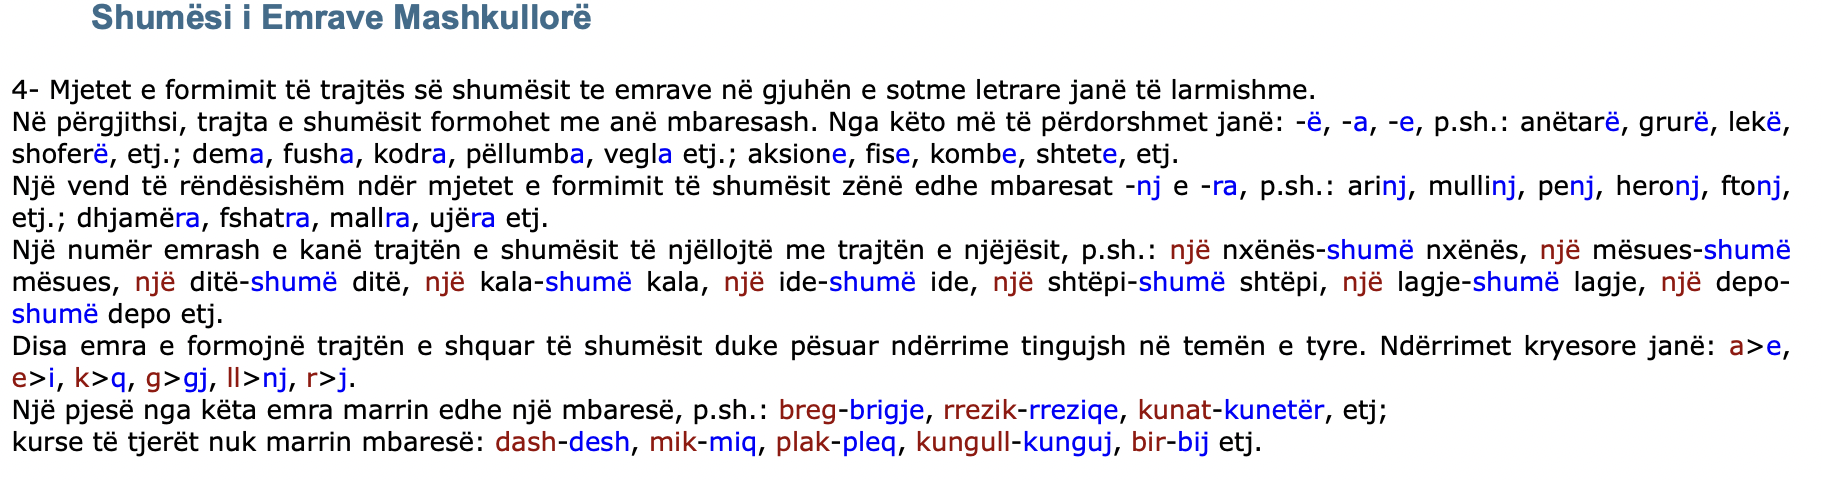 Shumësi i Emrave Mashkullorë - Gjuhë shqipe